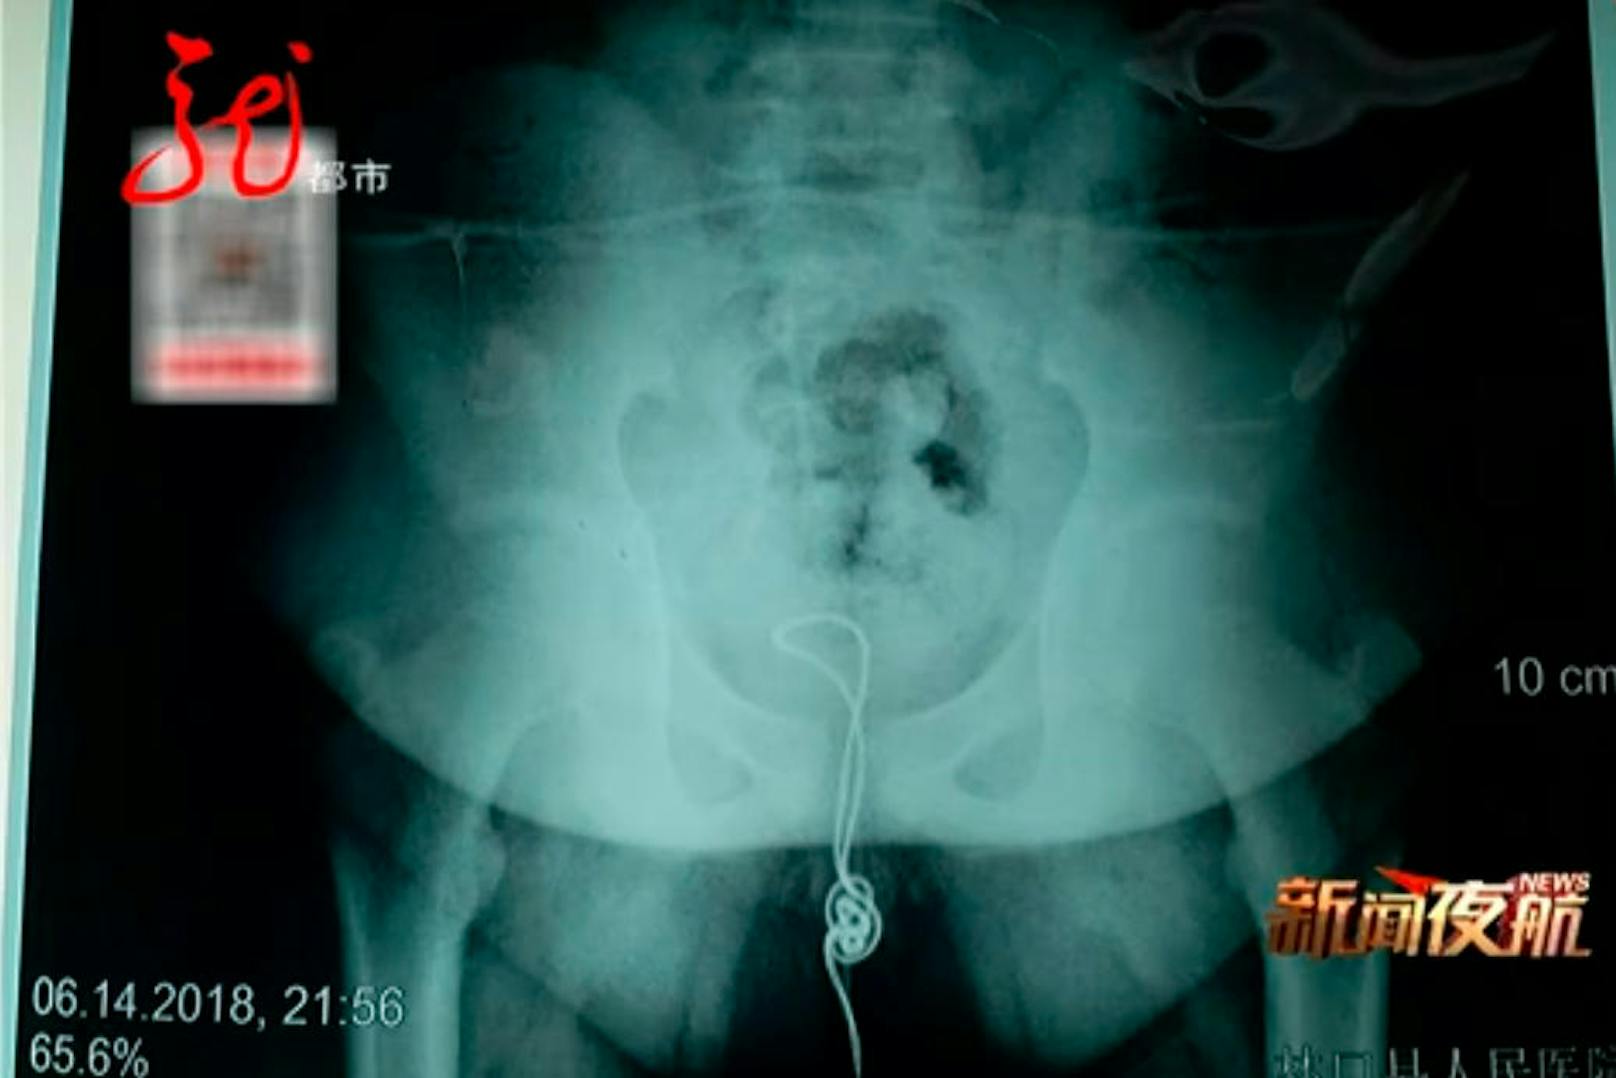 Auch die Ärzte scheiterten beim Versuch, den rund 20 Zentimeter langen Fremdkörper aus der Harnröhre des Buben zu ziehen. Den Grund offenbarte eine Röntgenaufnahme: Das Kabel hatte sich im Körper des Buben verheddert.